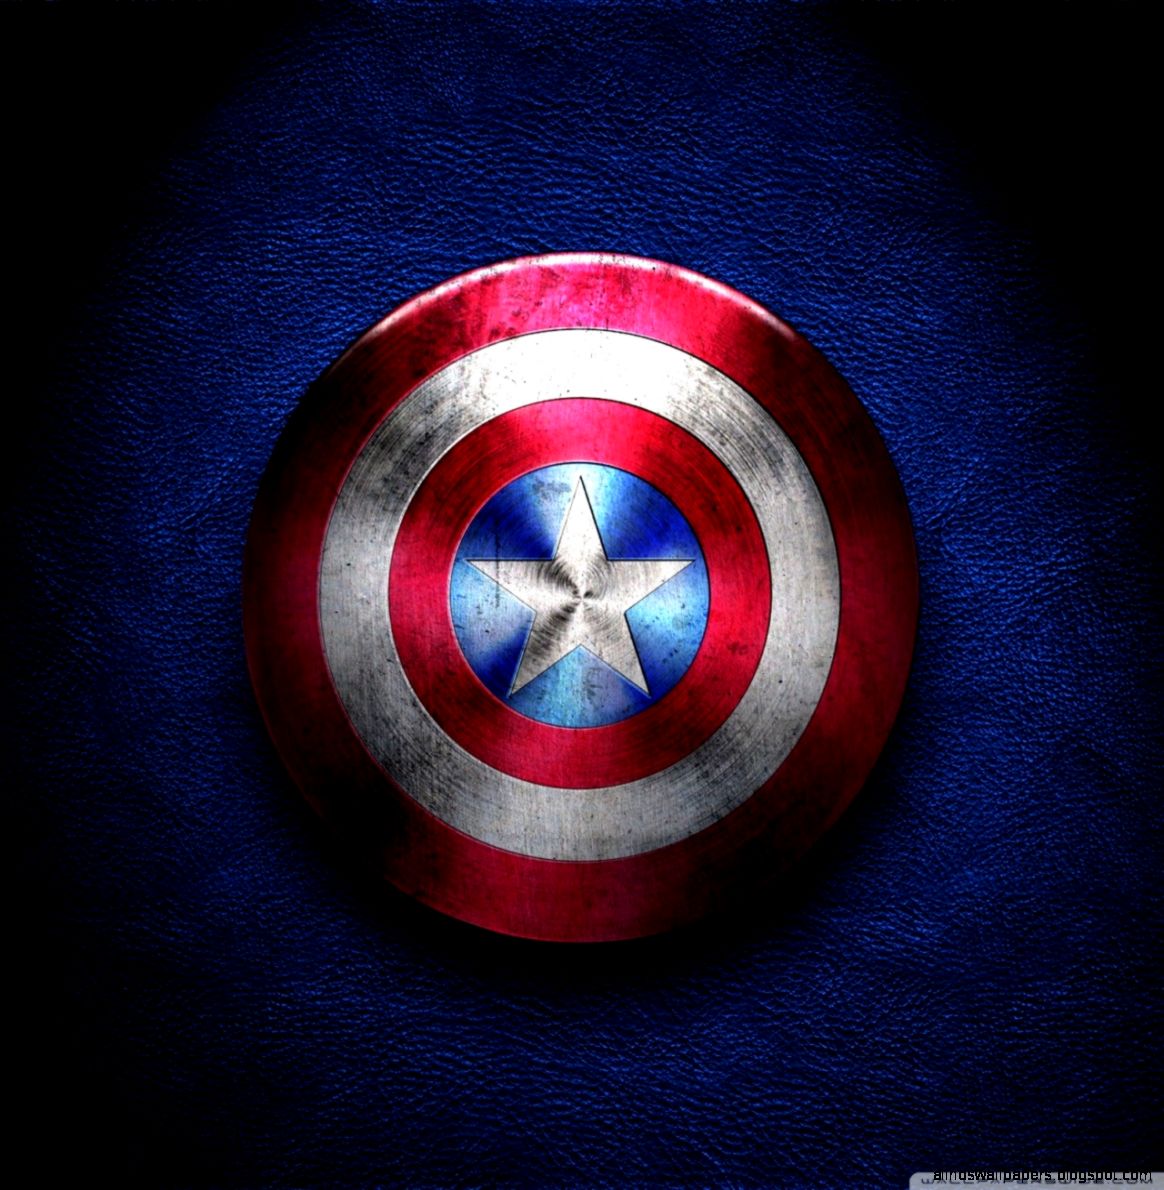 壁紙キャプテンアメリカアンドロイド用,キャプテン・アメリカ,スーパーヒーロー,架空の人物,アベンジャーズ,シンボル